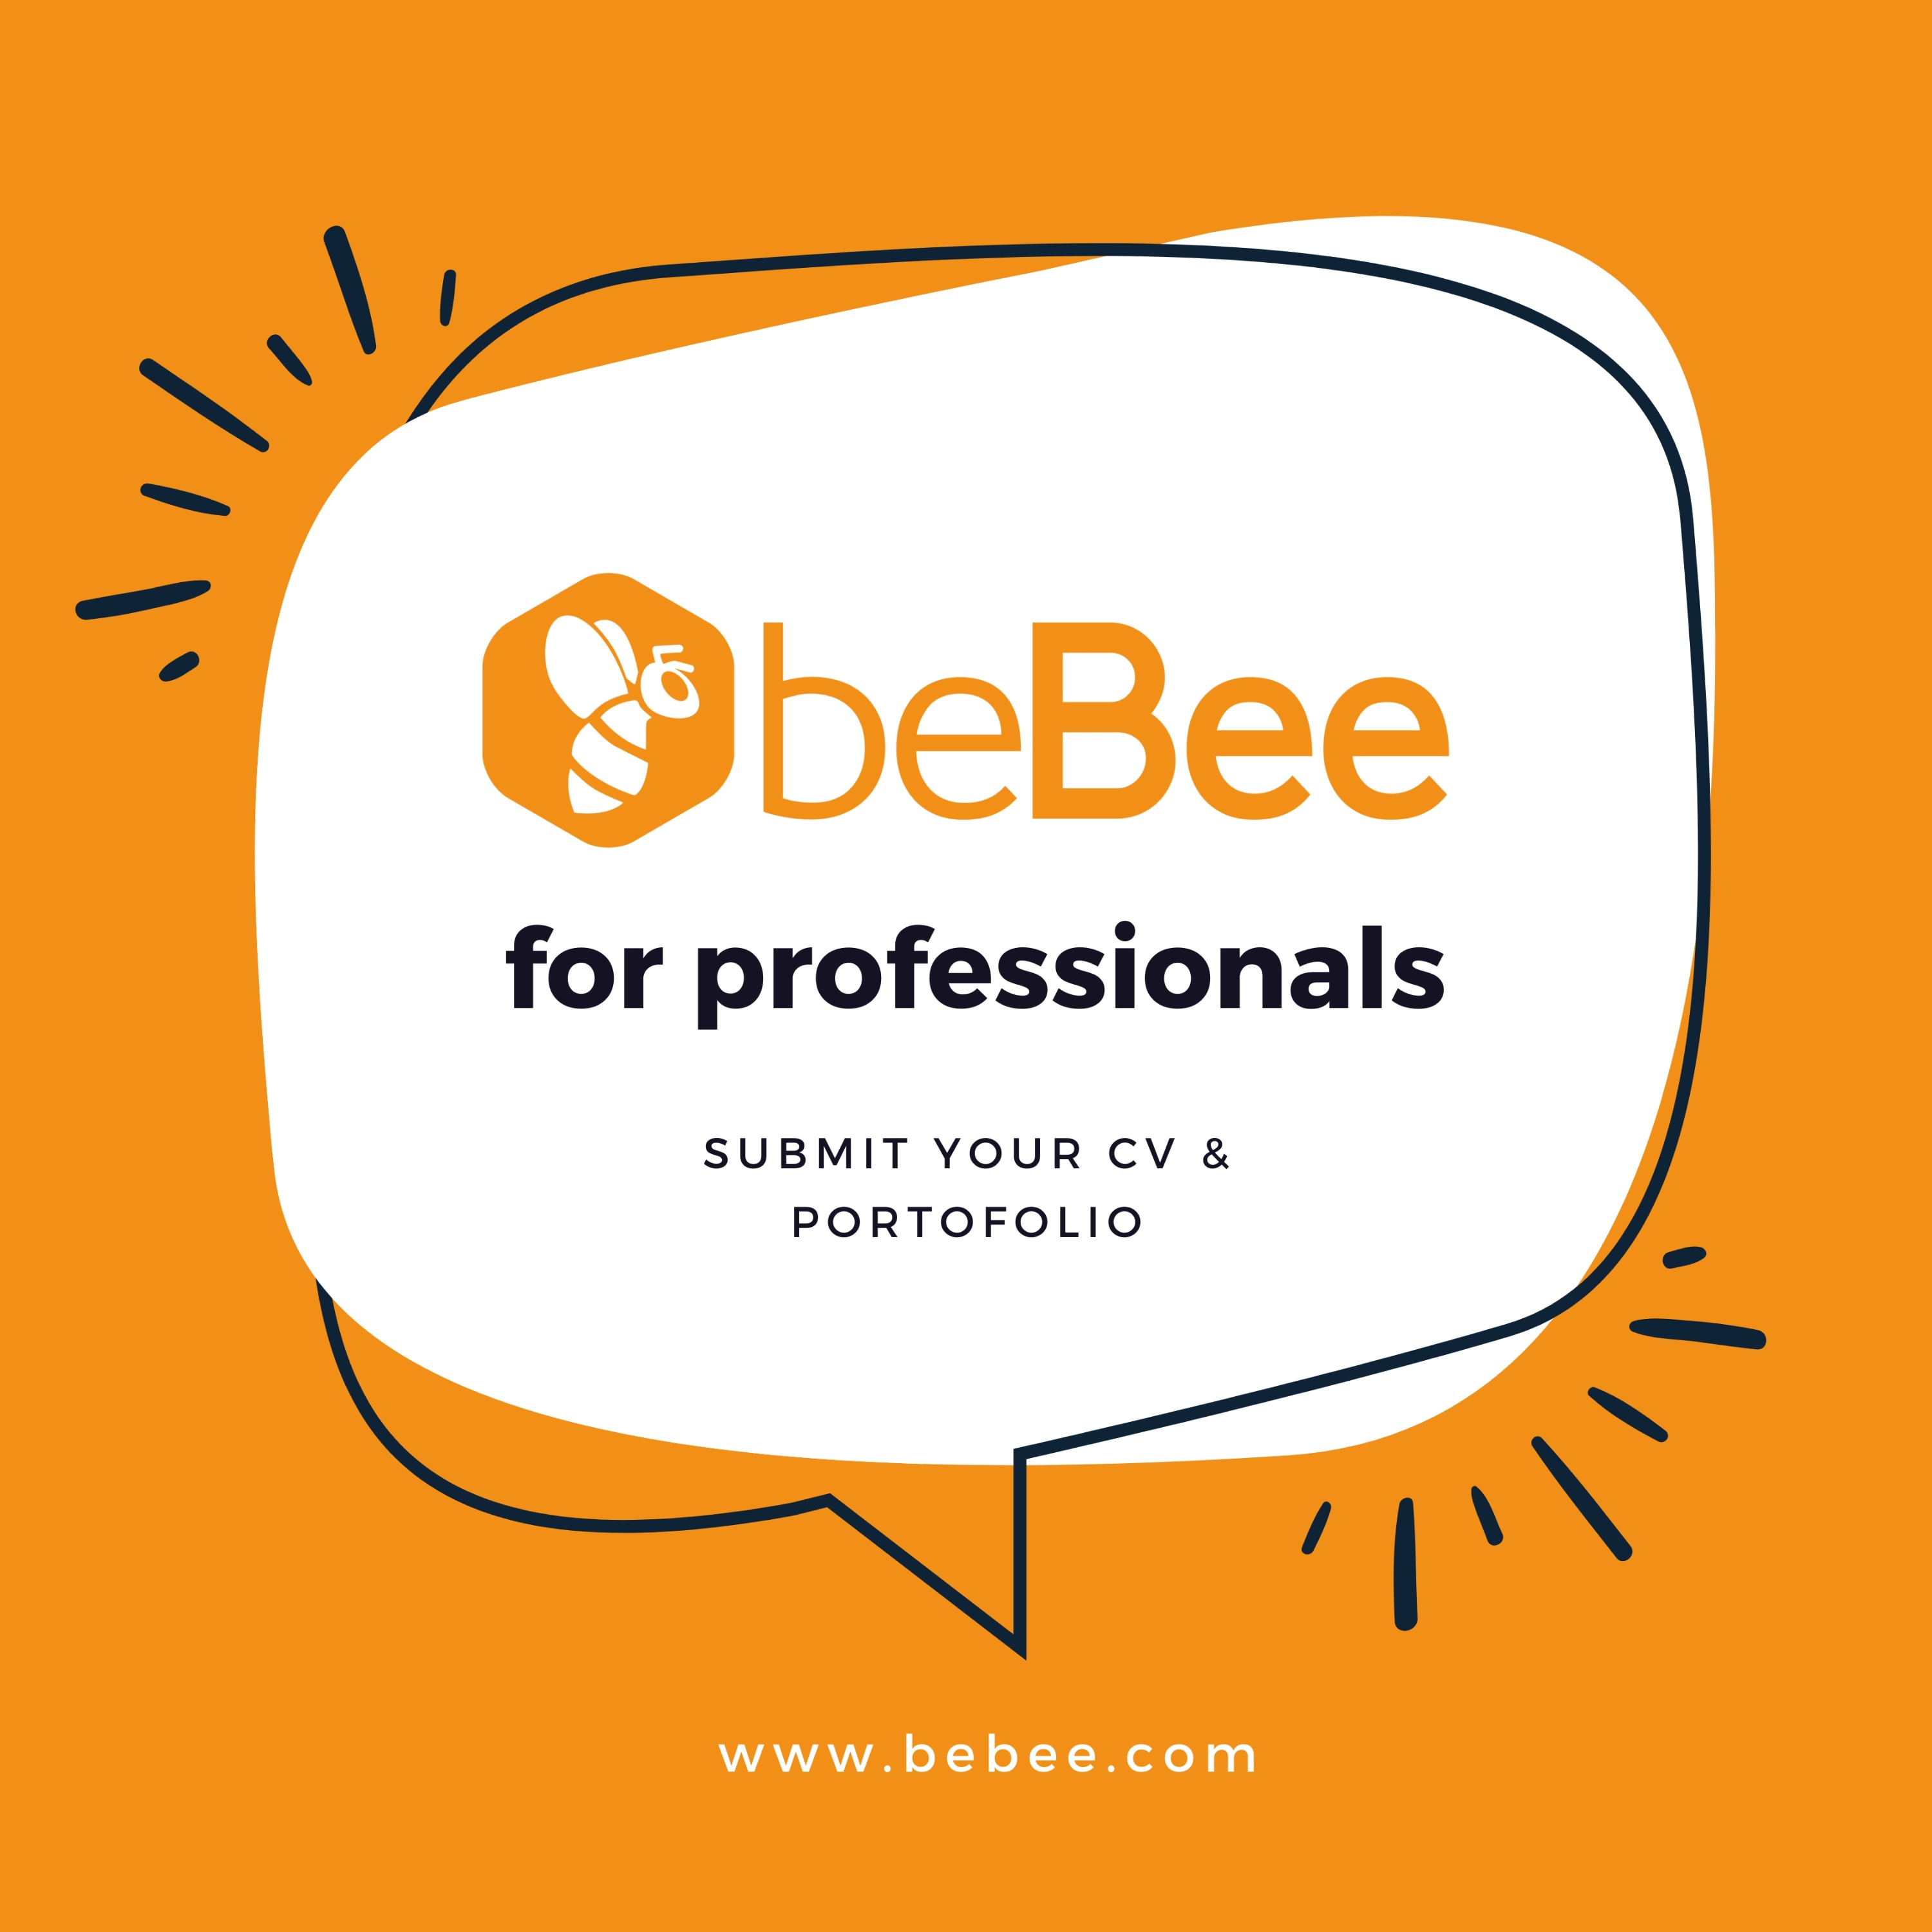 beBee Professionals